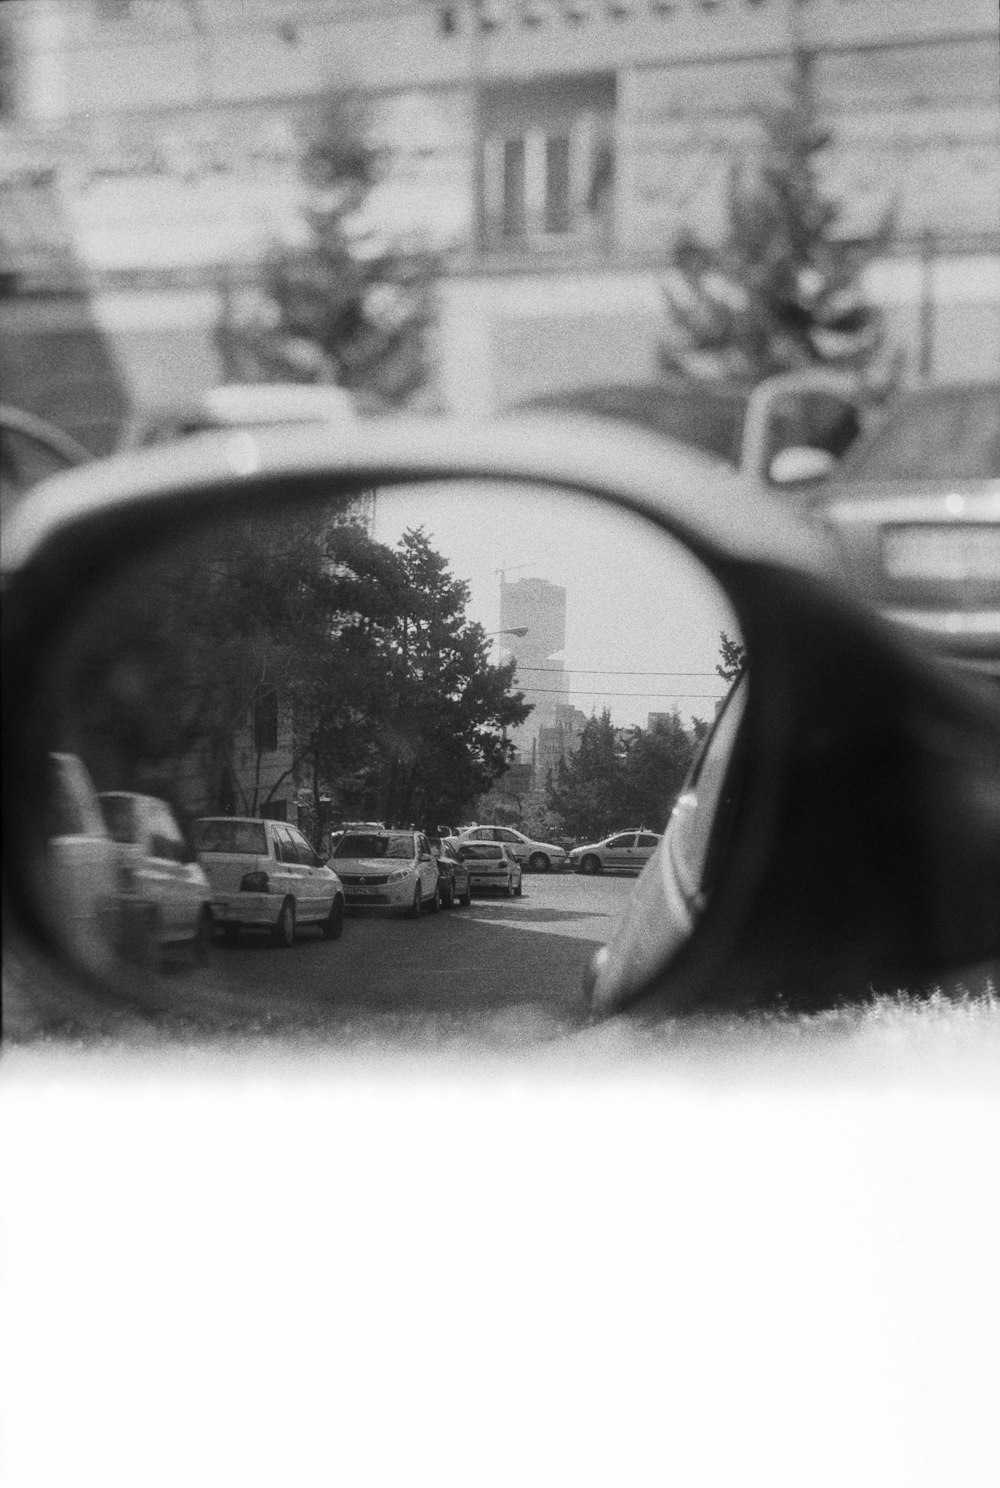 uno specchietto retrovisore che riflette le auto su una strada cittadina